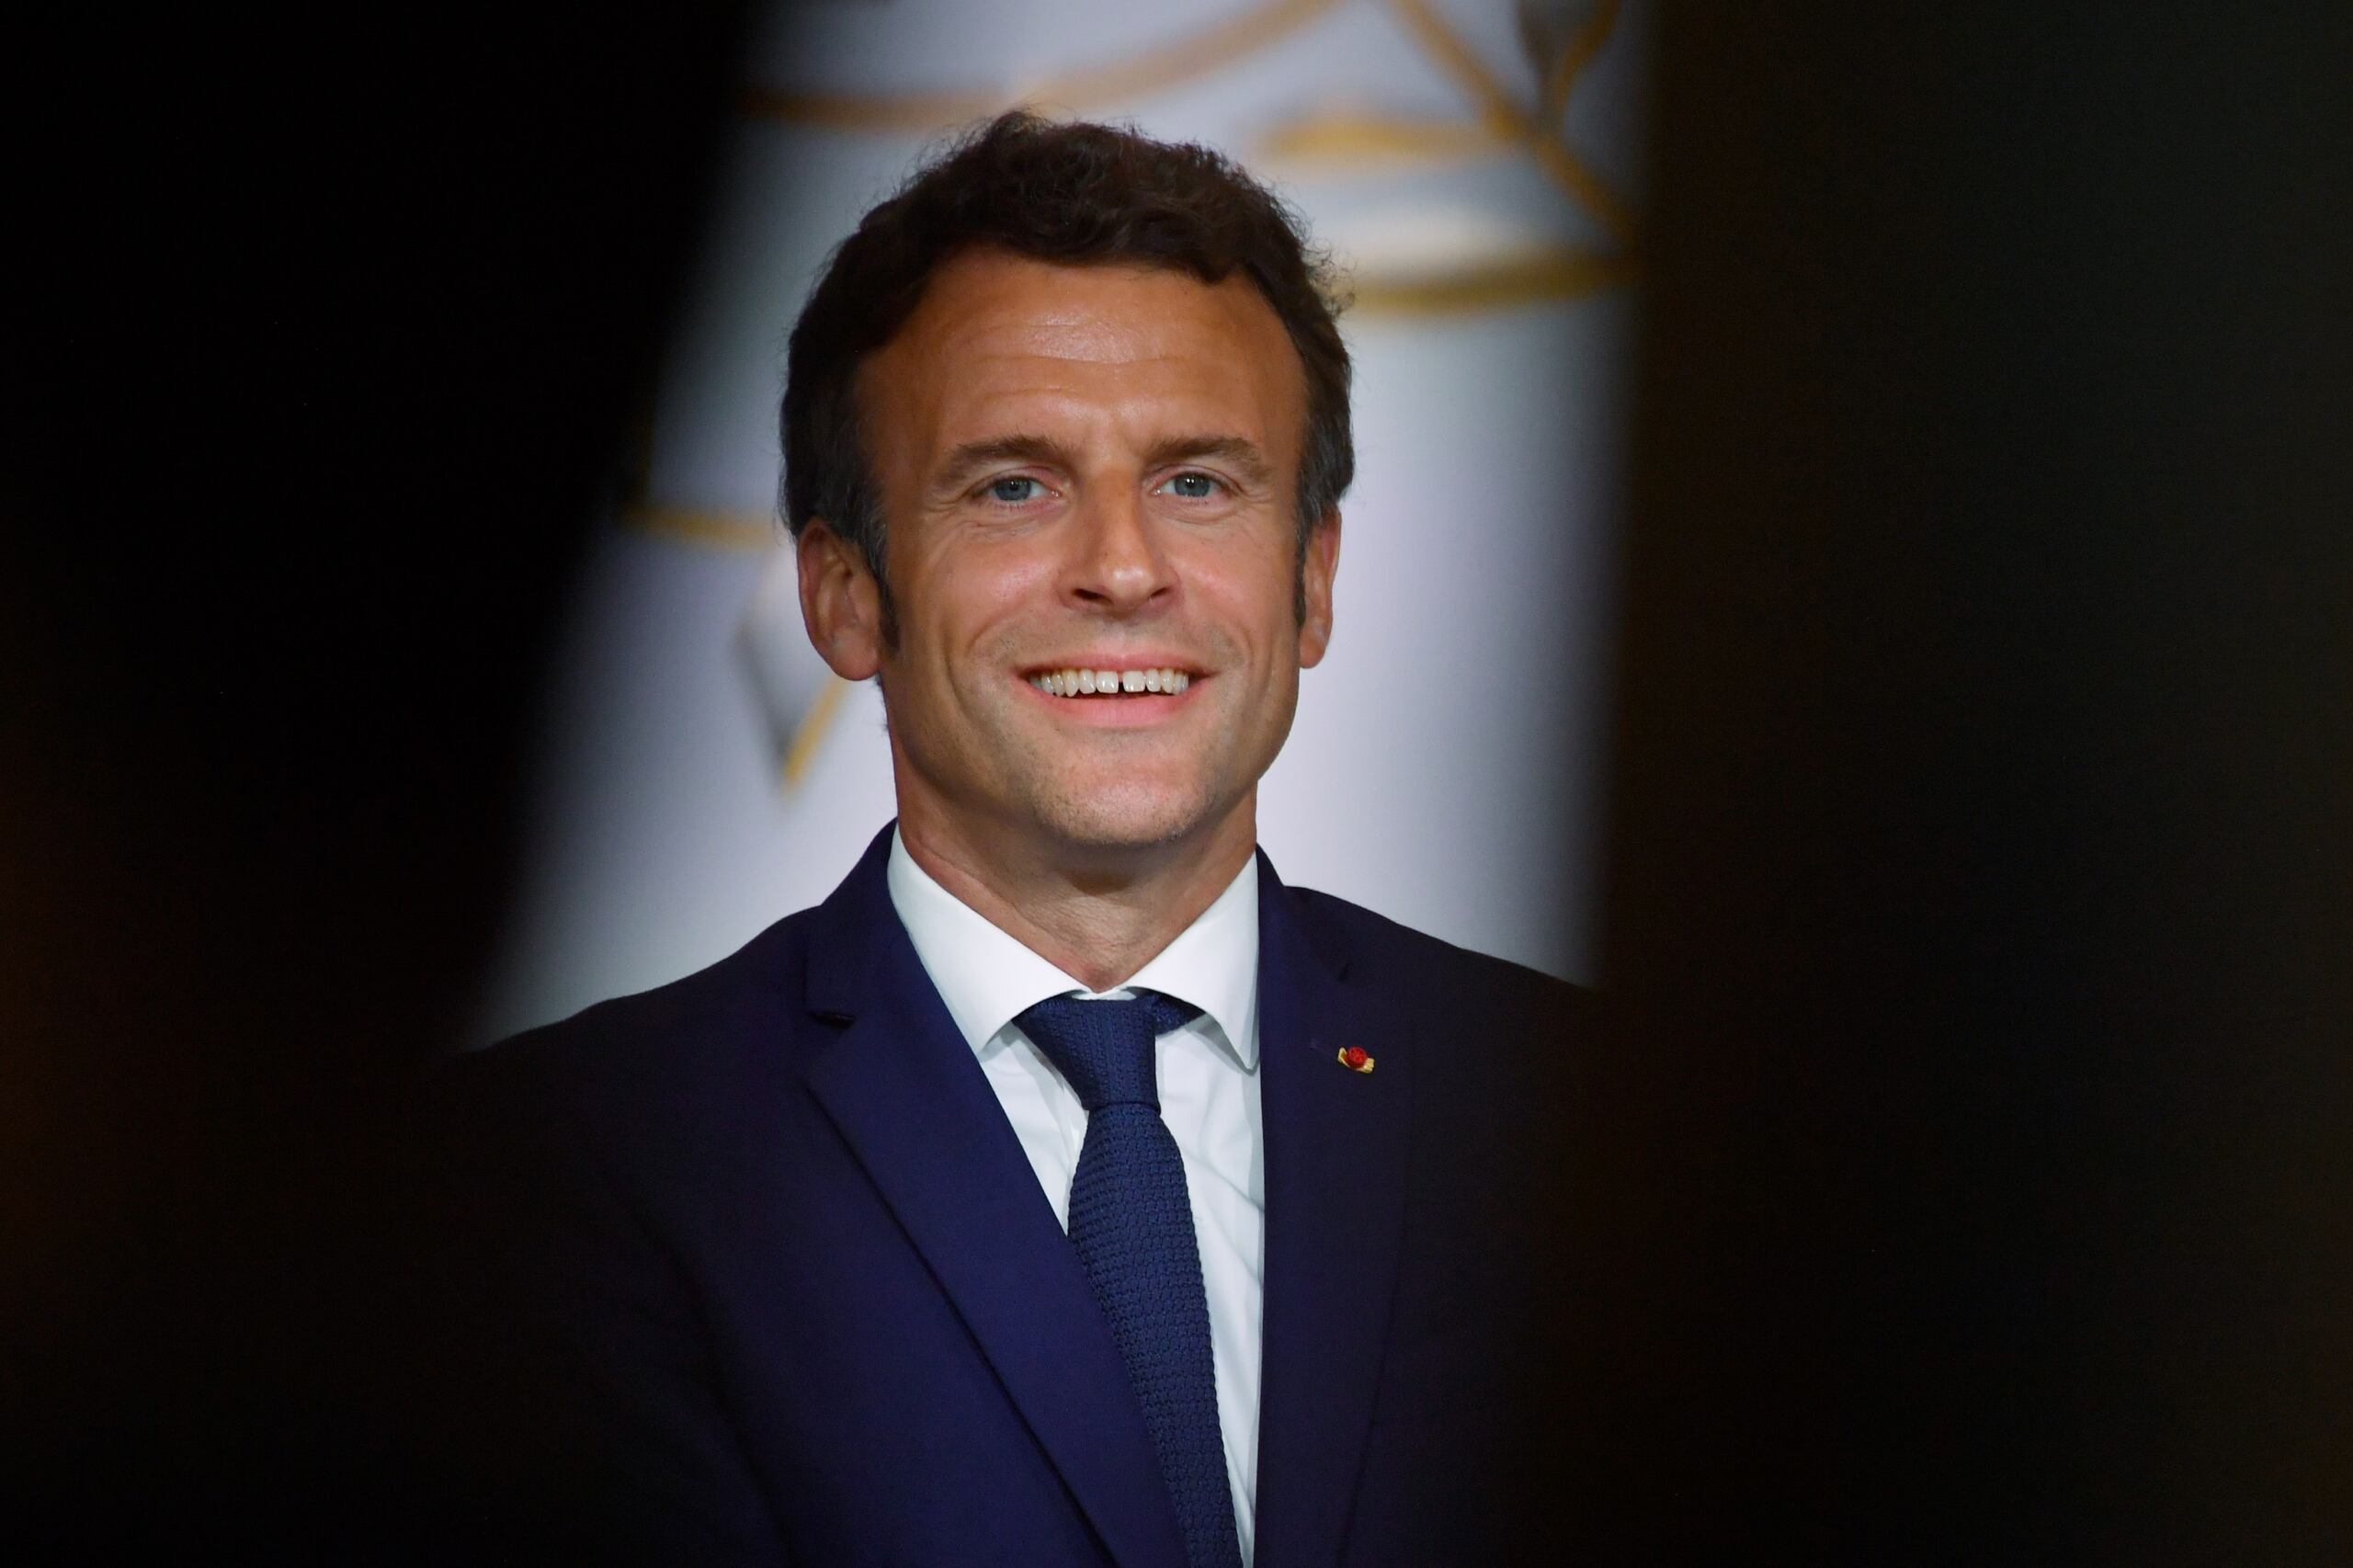 Prezydent Francji Emmanuel Macron bierze udział w spotkaniu z francuskimi graczami e-sportowymi w Pałacu Elizejskim w Paryżu, 3 czerwca 2022 r.